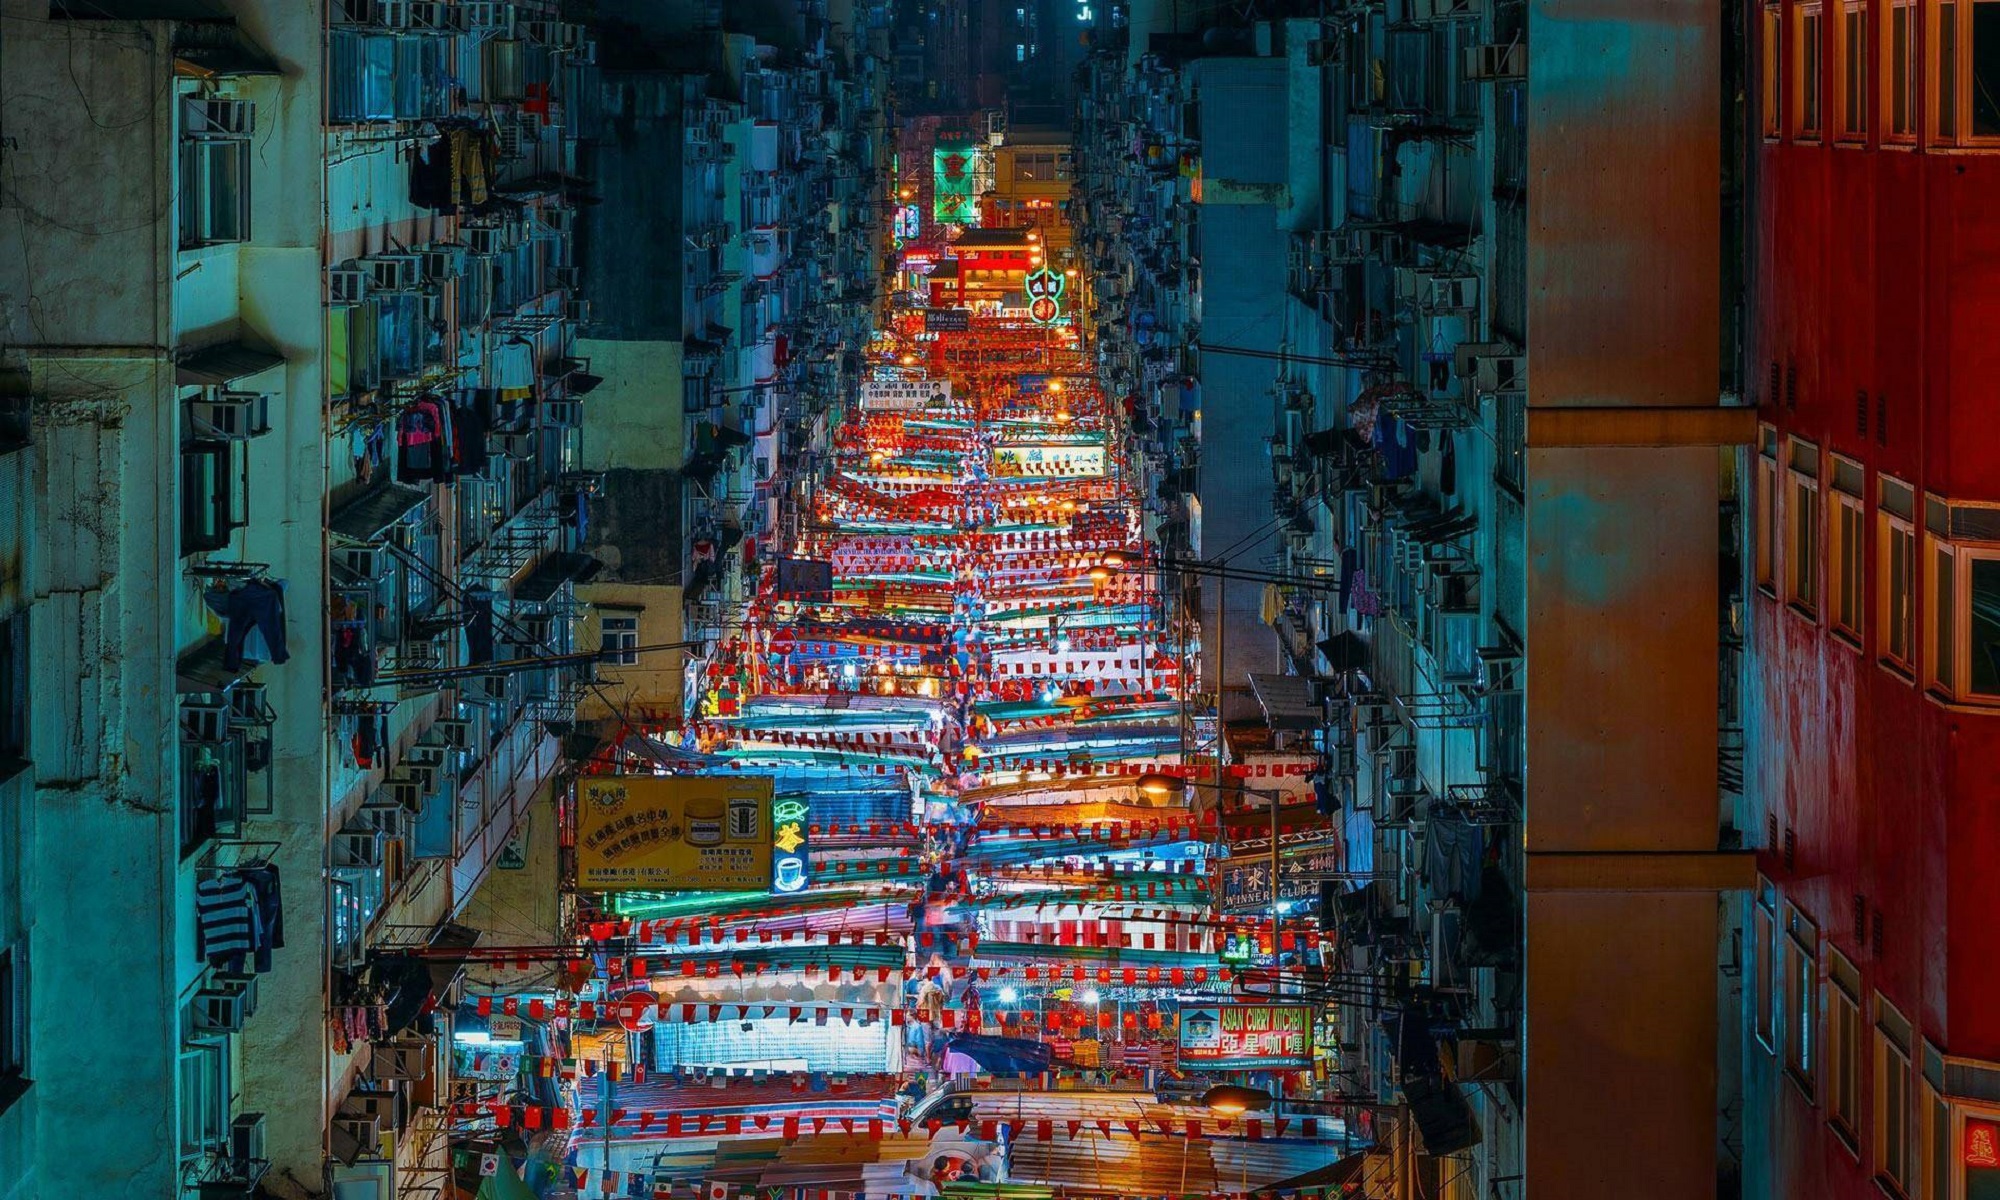 Hong Kong market street.